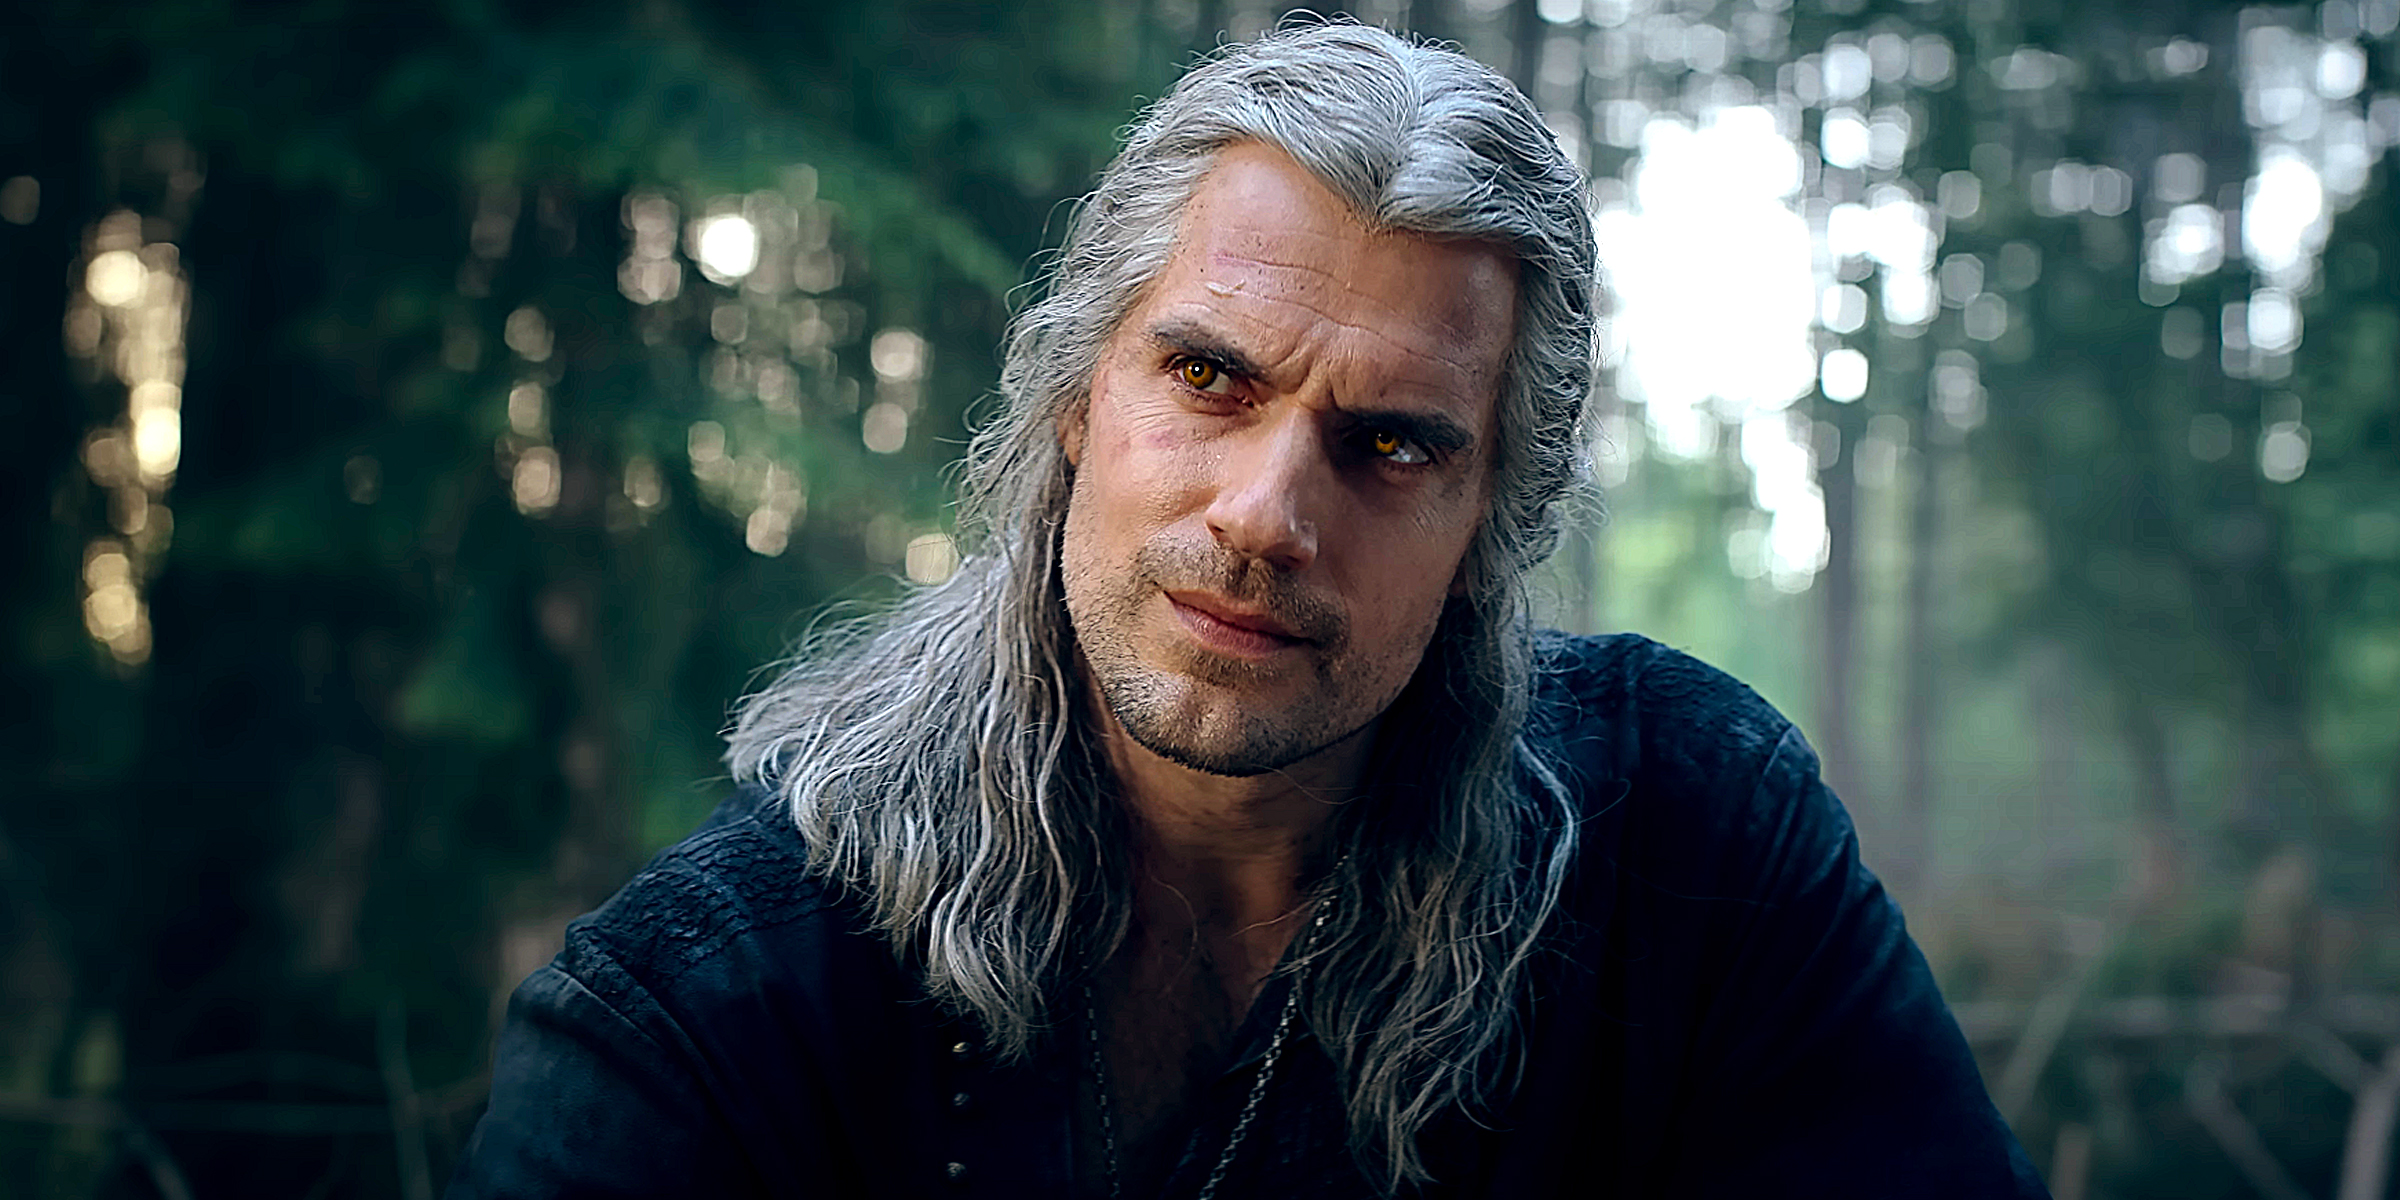 Henry Cavill as Geralt of Rivia | Source: YouTube/Netflix